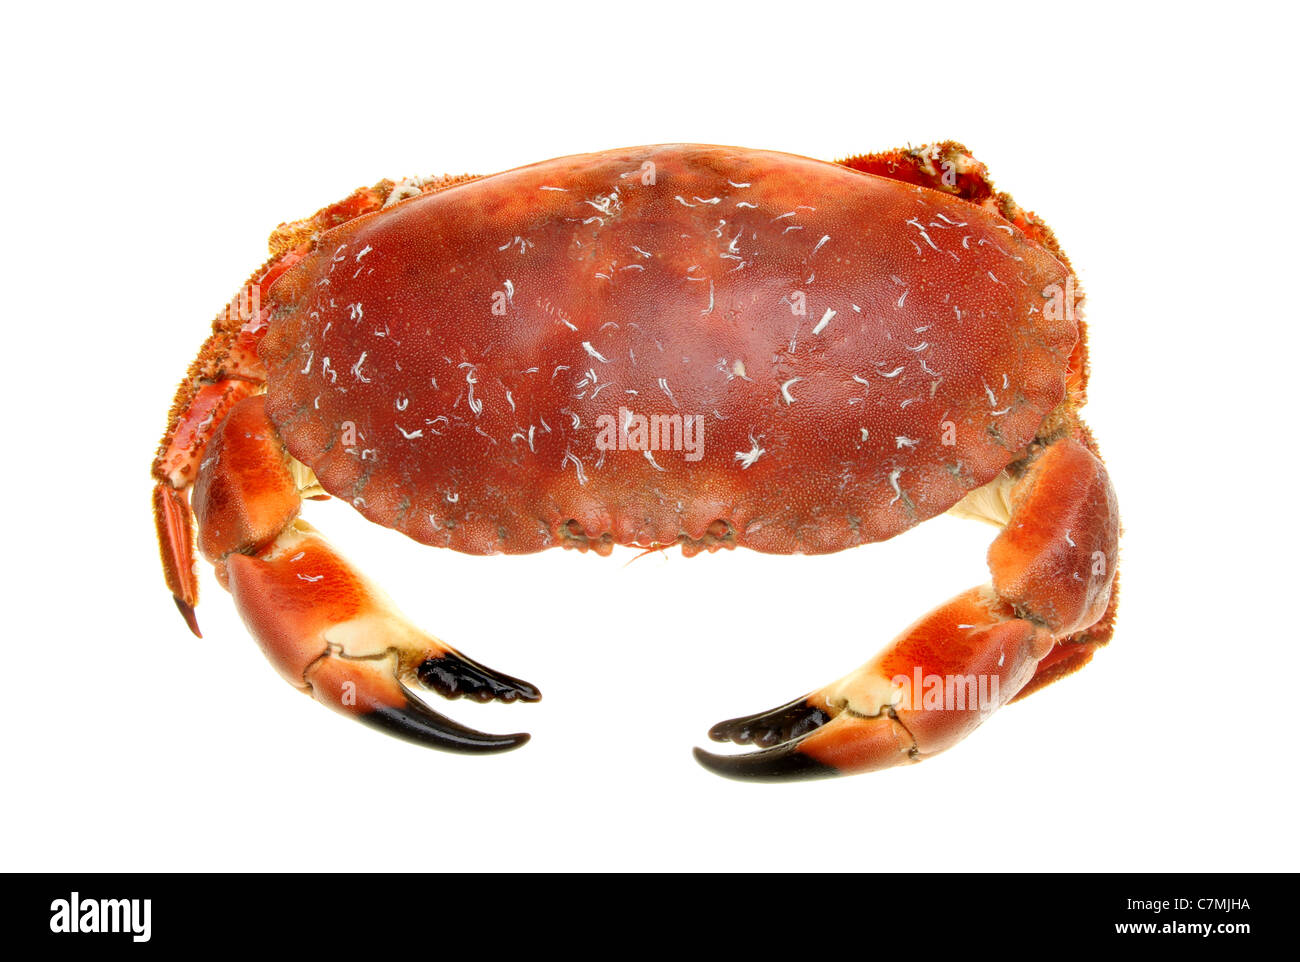 Crabe brun cuit vus du dessus isolés contre white Banque D'Images